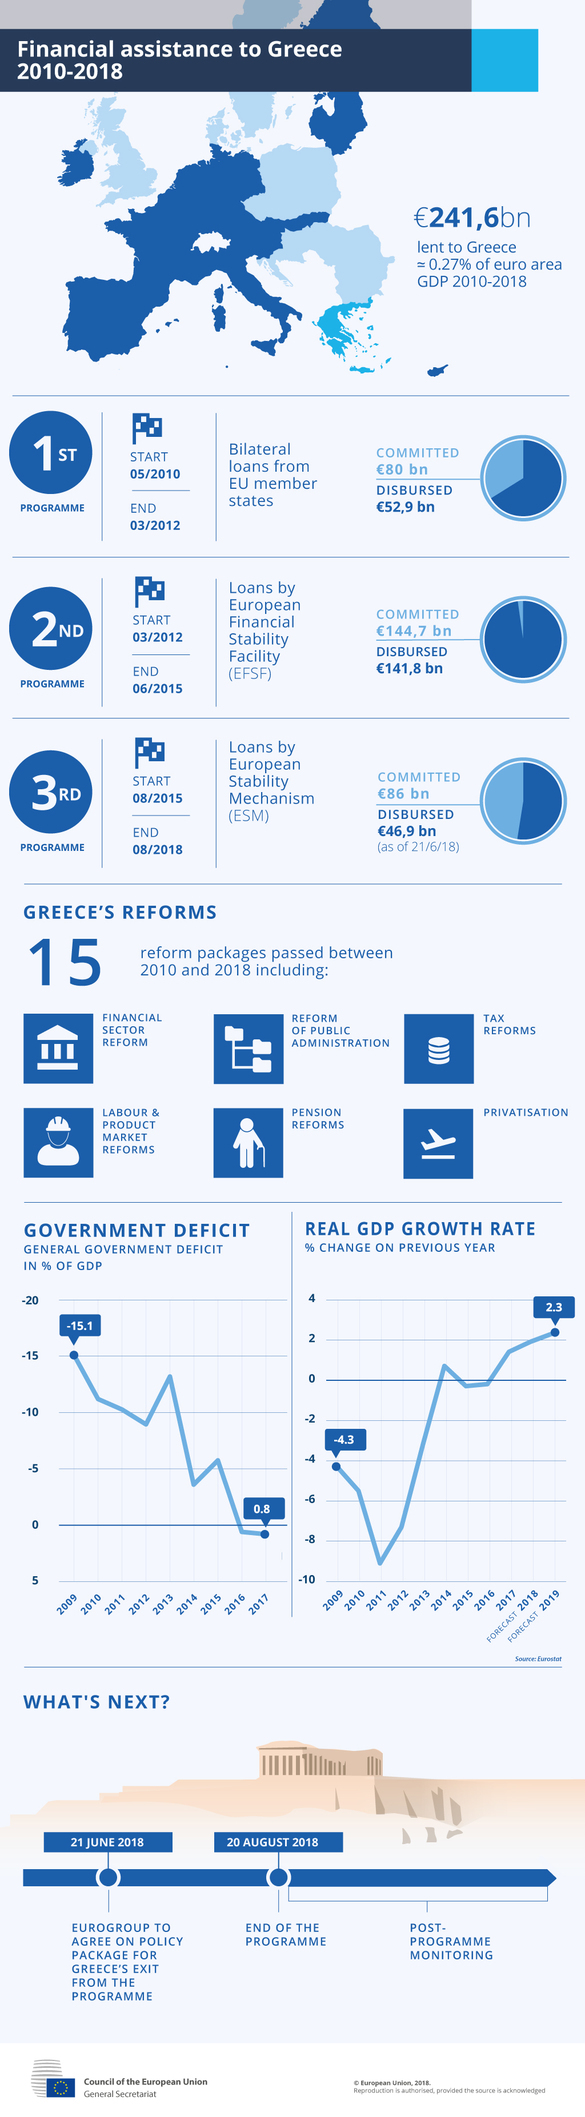 Comisia Europeană a activat cadrul de supraveghere a Greciei, prin care va monitoriza aplicarea reformelor 